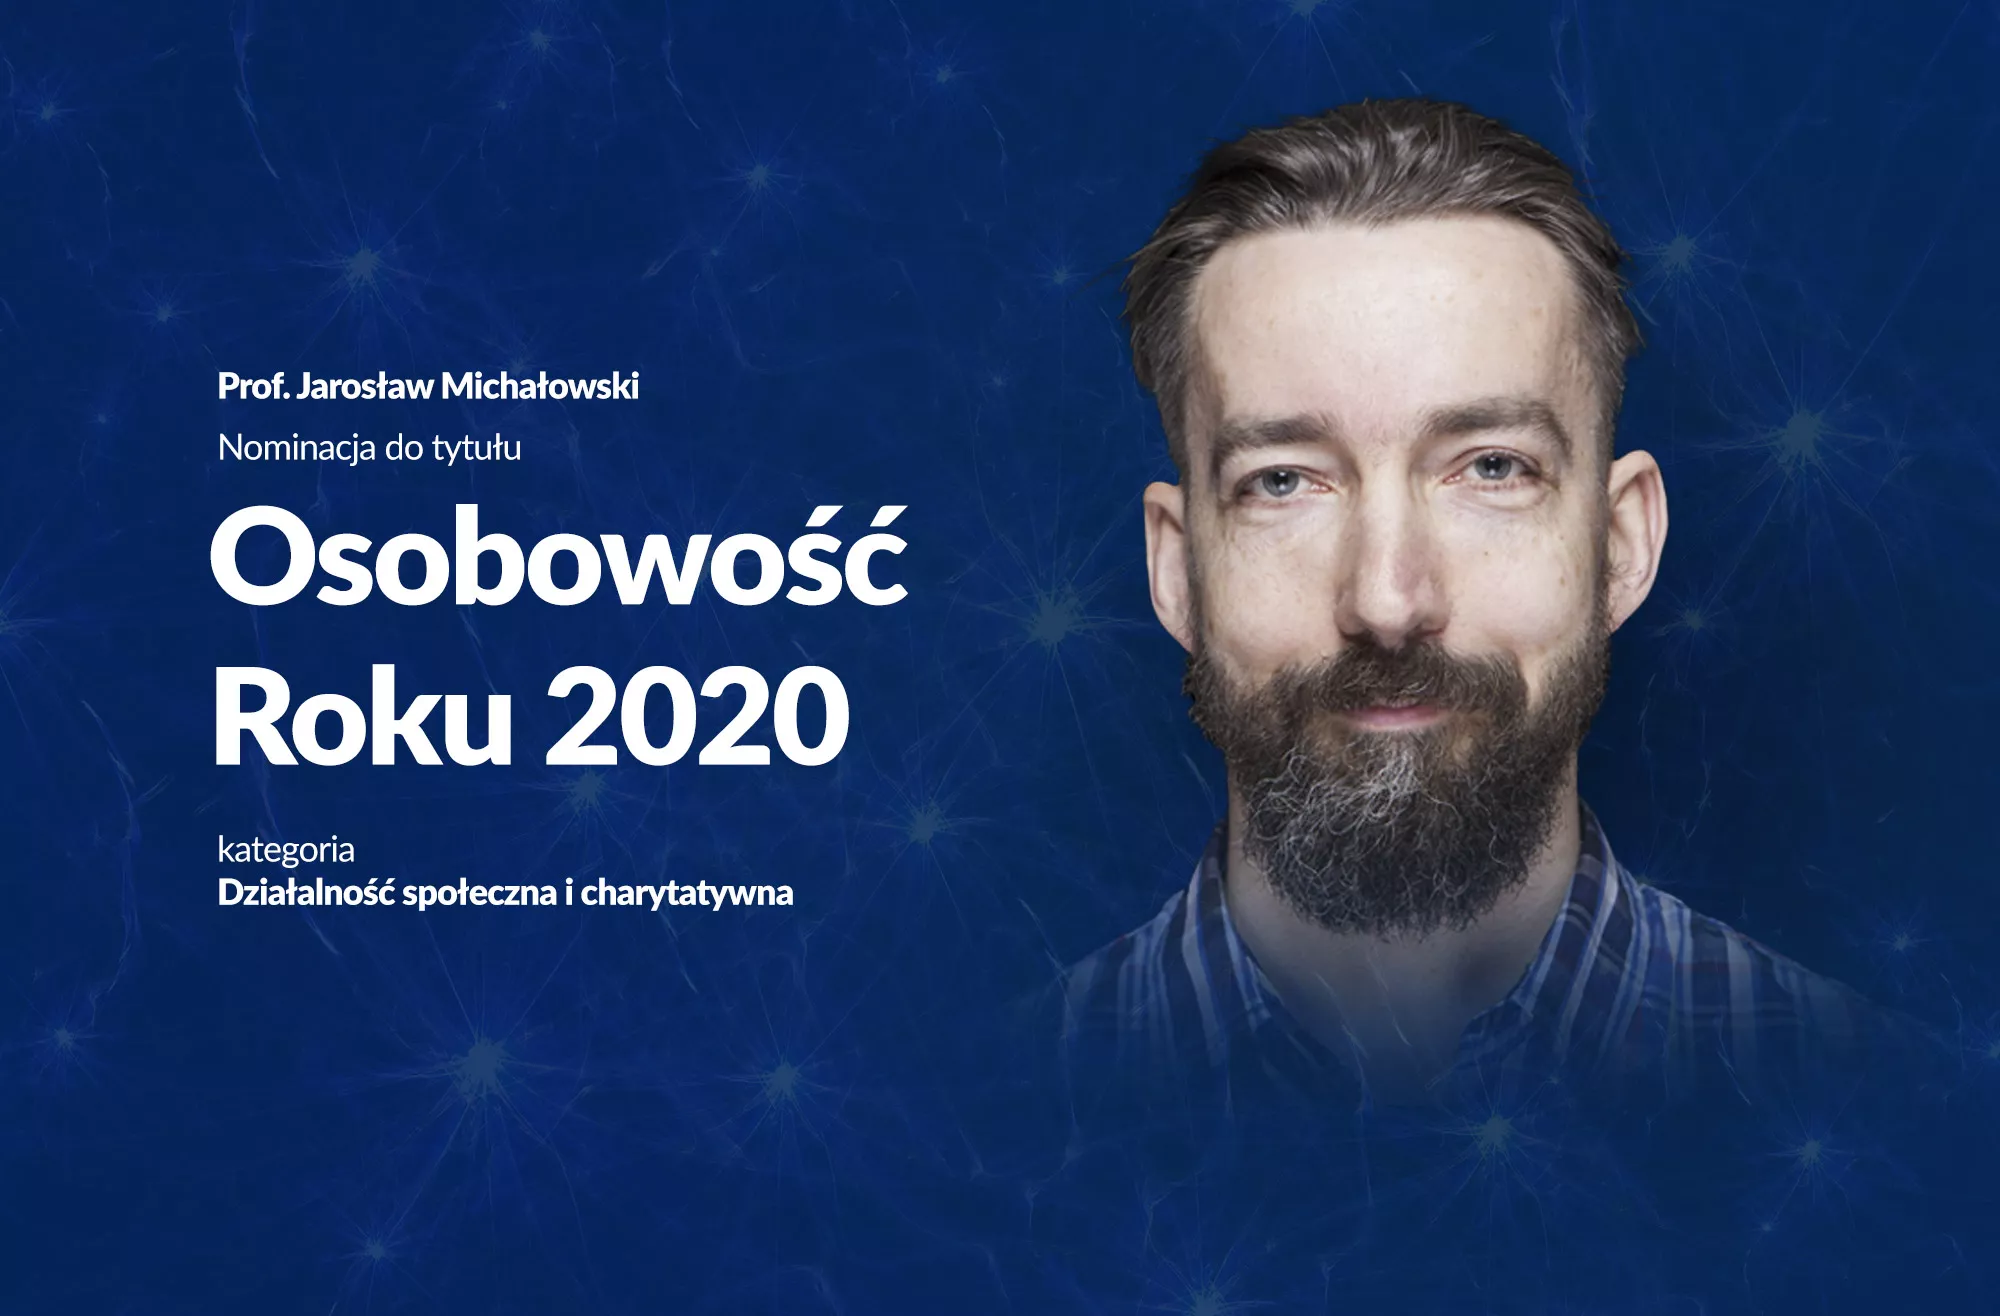 Prof Jarosław Michałowski Nominowany Do Tytułu Osobowość Roku 2020 Uniwersytet Swps 1166